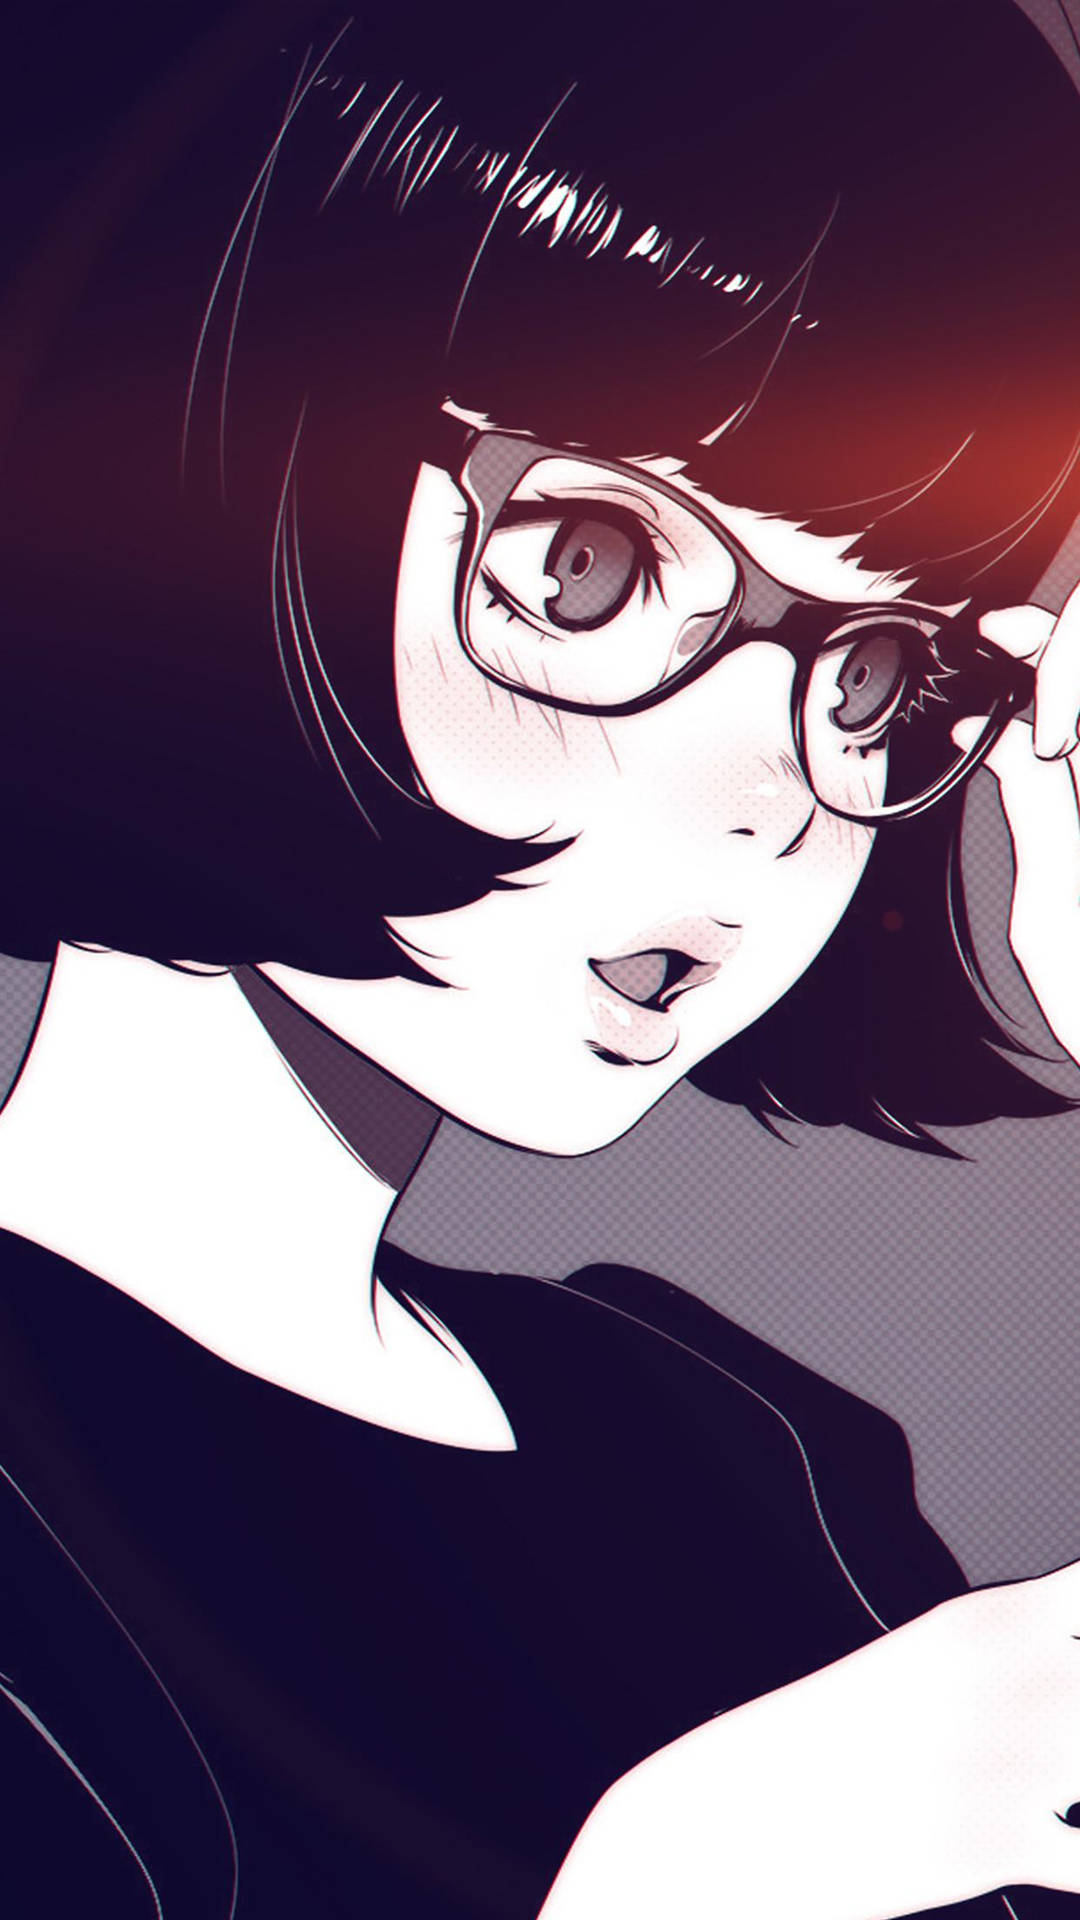 Aesthetic Anime Girl With Eyeglasses Wallpaper